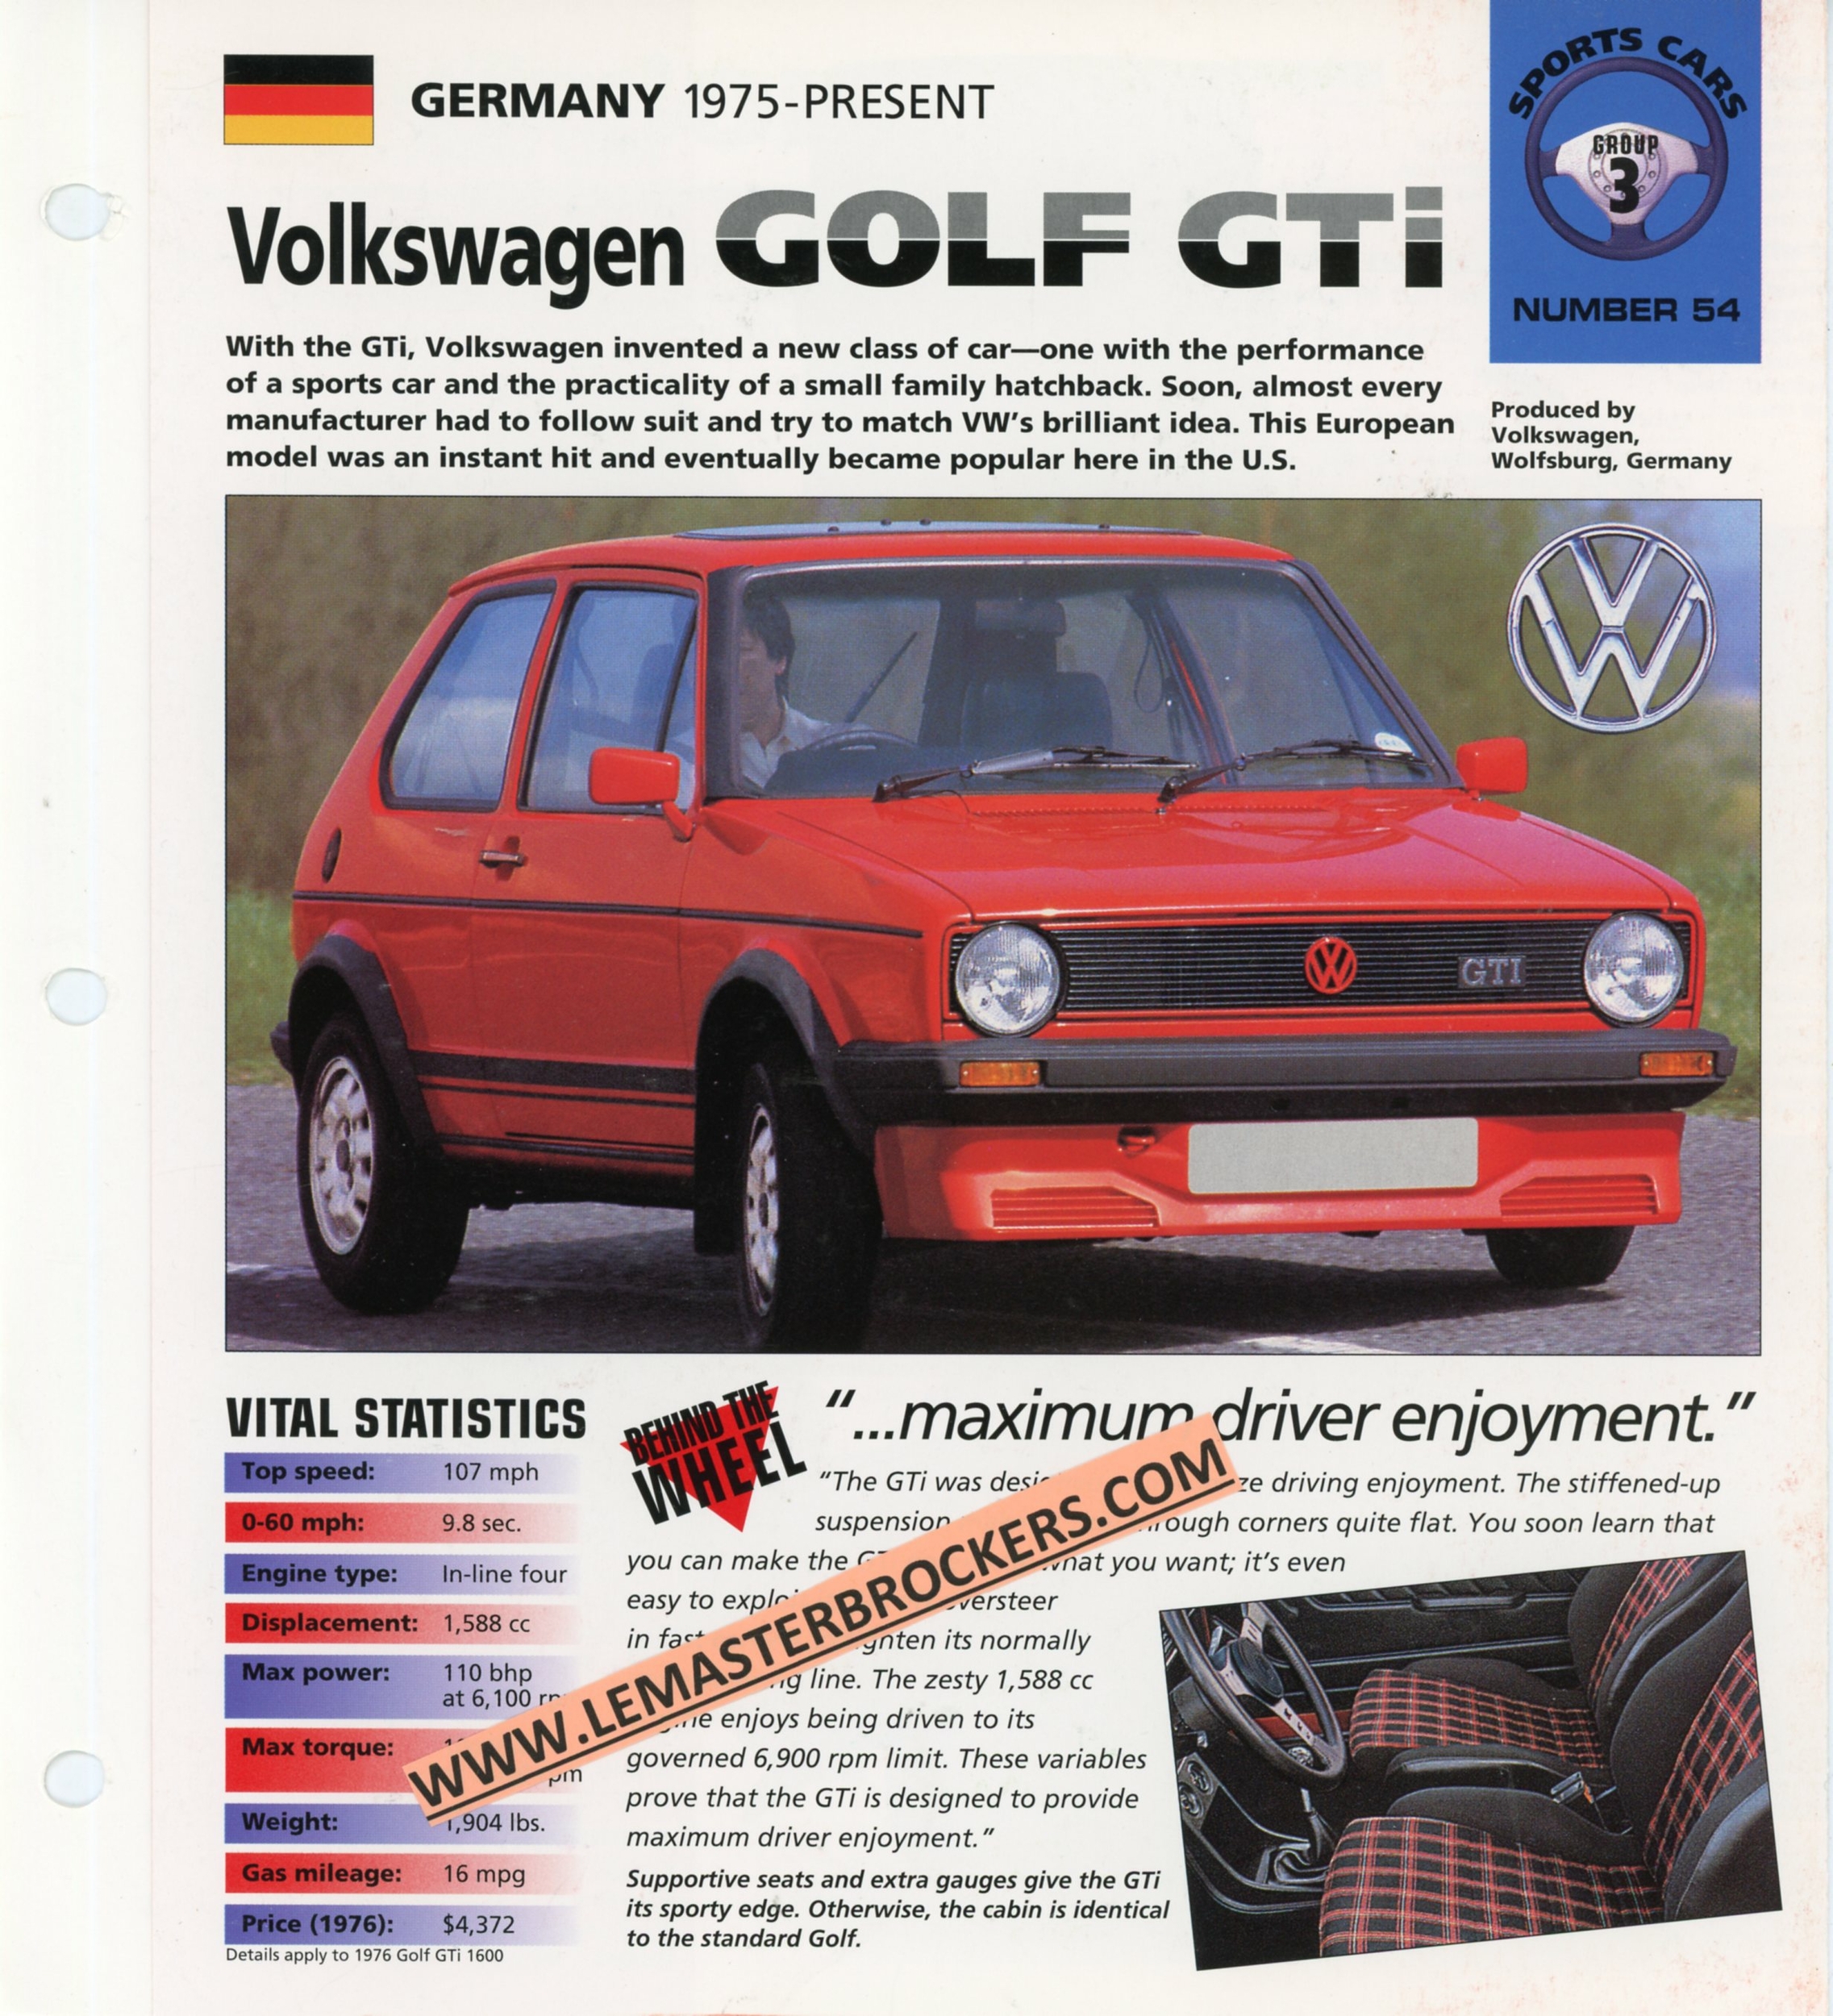 VW-GOLF-GTI-FICHE-TECHNIQUE-AUTO-LEMASTERBROCKERS